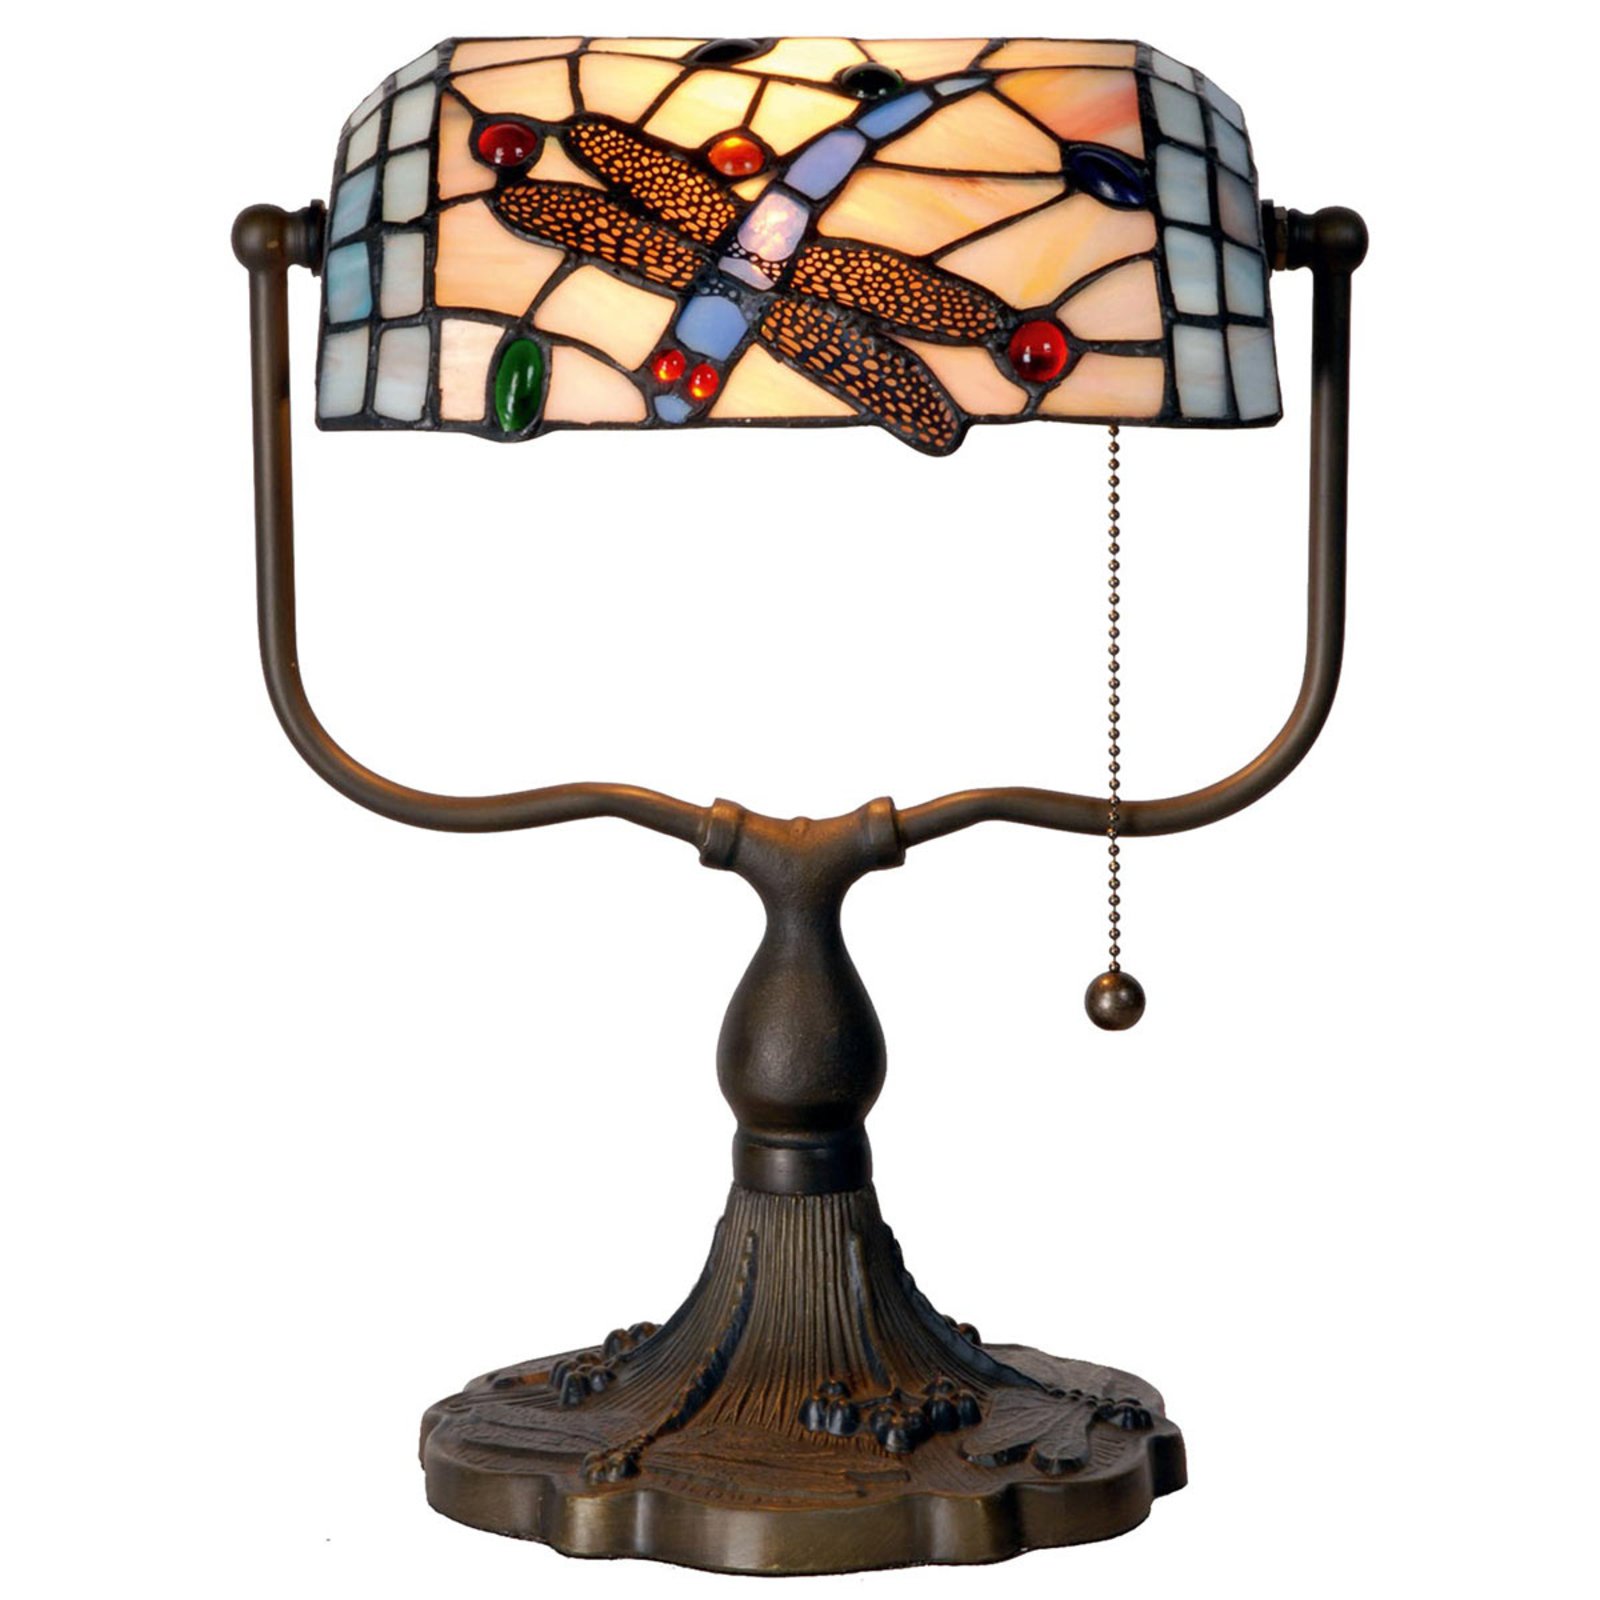 Bankarska svjetiljka Dragonfly u Tiffany stilu